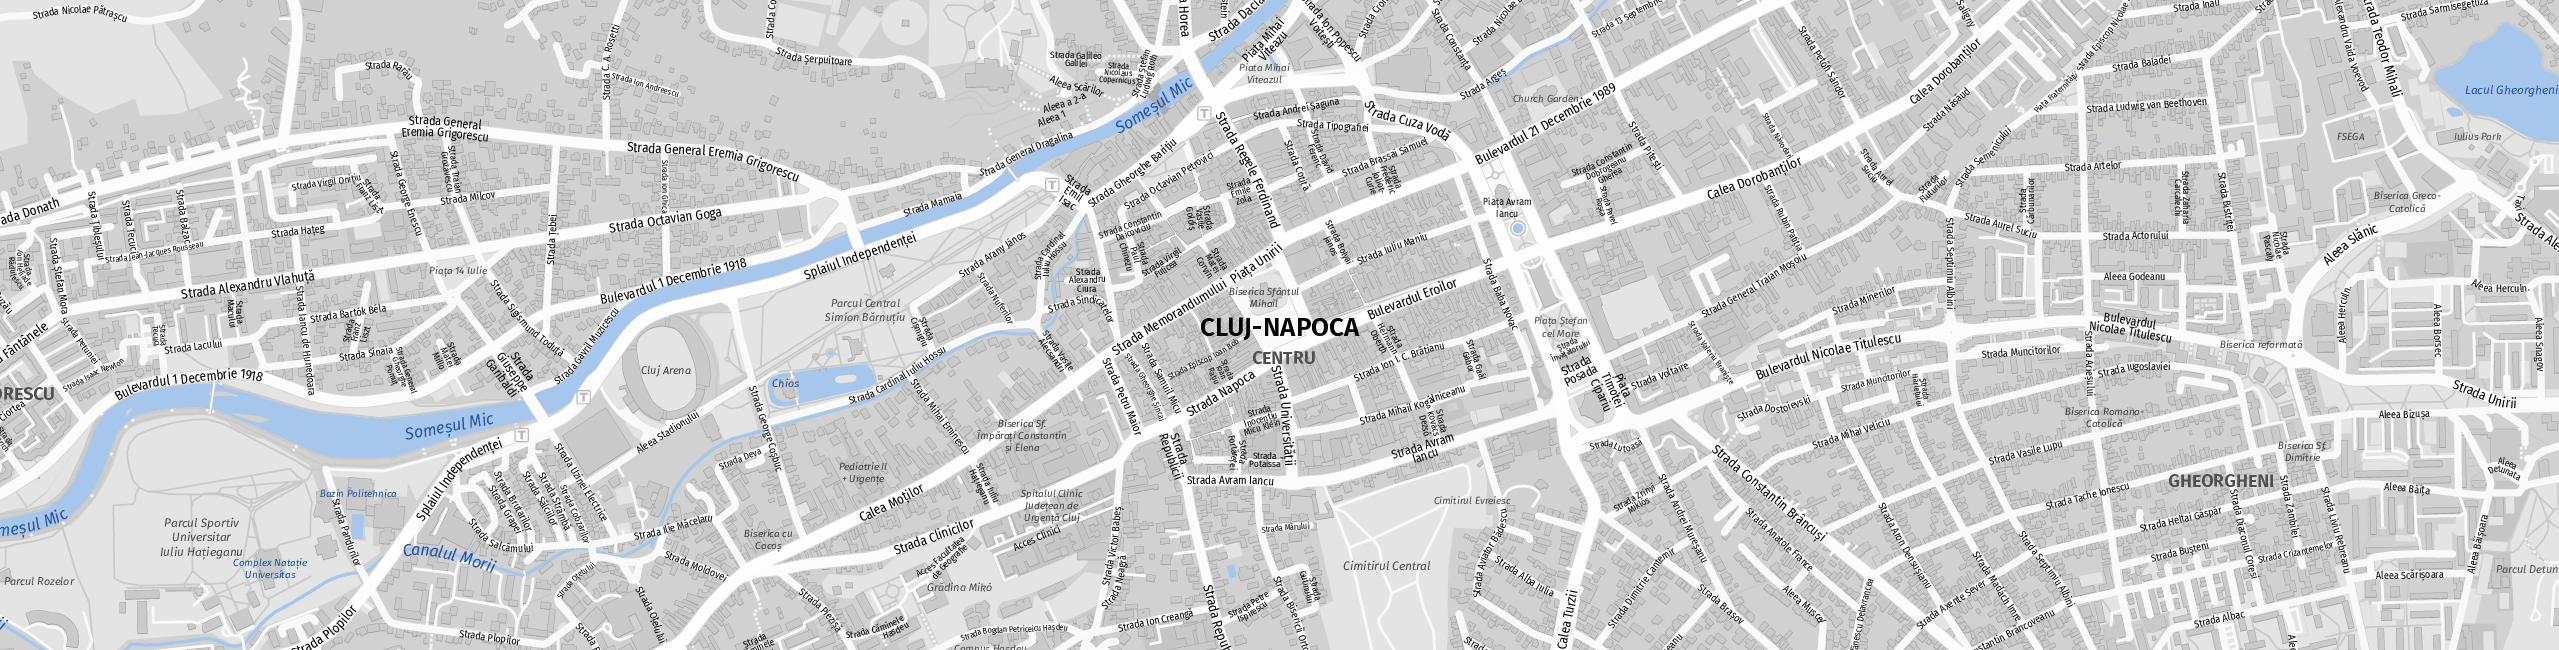 Stadtplan Cluj-Napoca zum Downloaden.